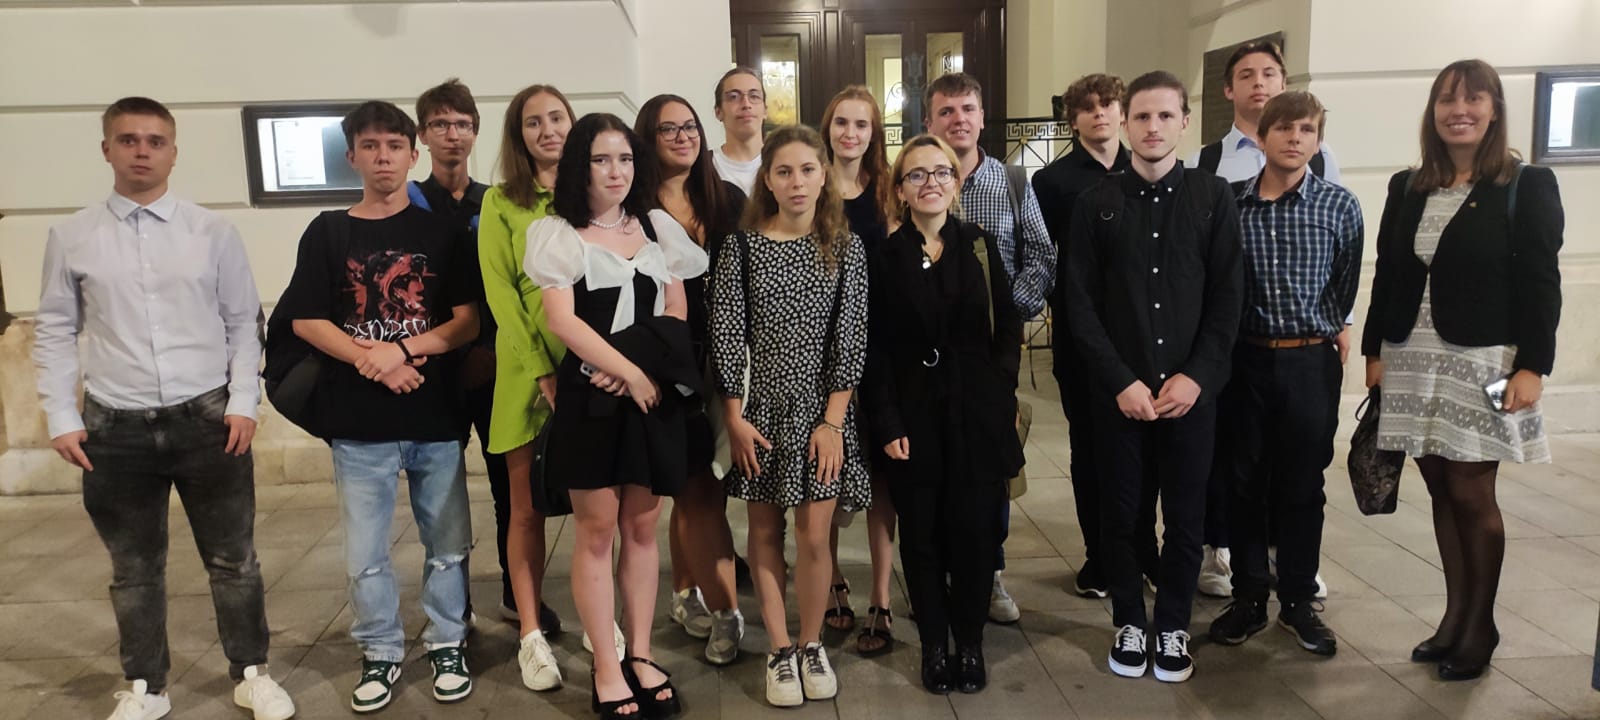 Boli sme súčasťou Letnej školy žurnalistiky v Prahe